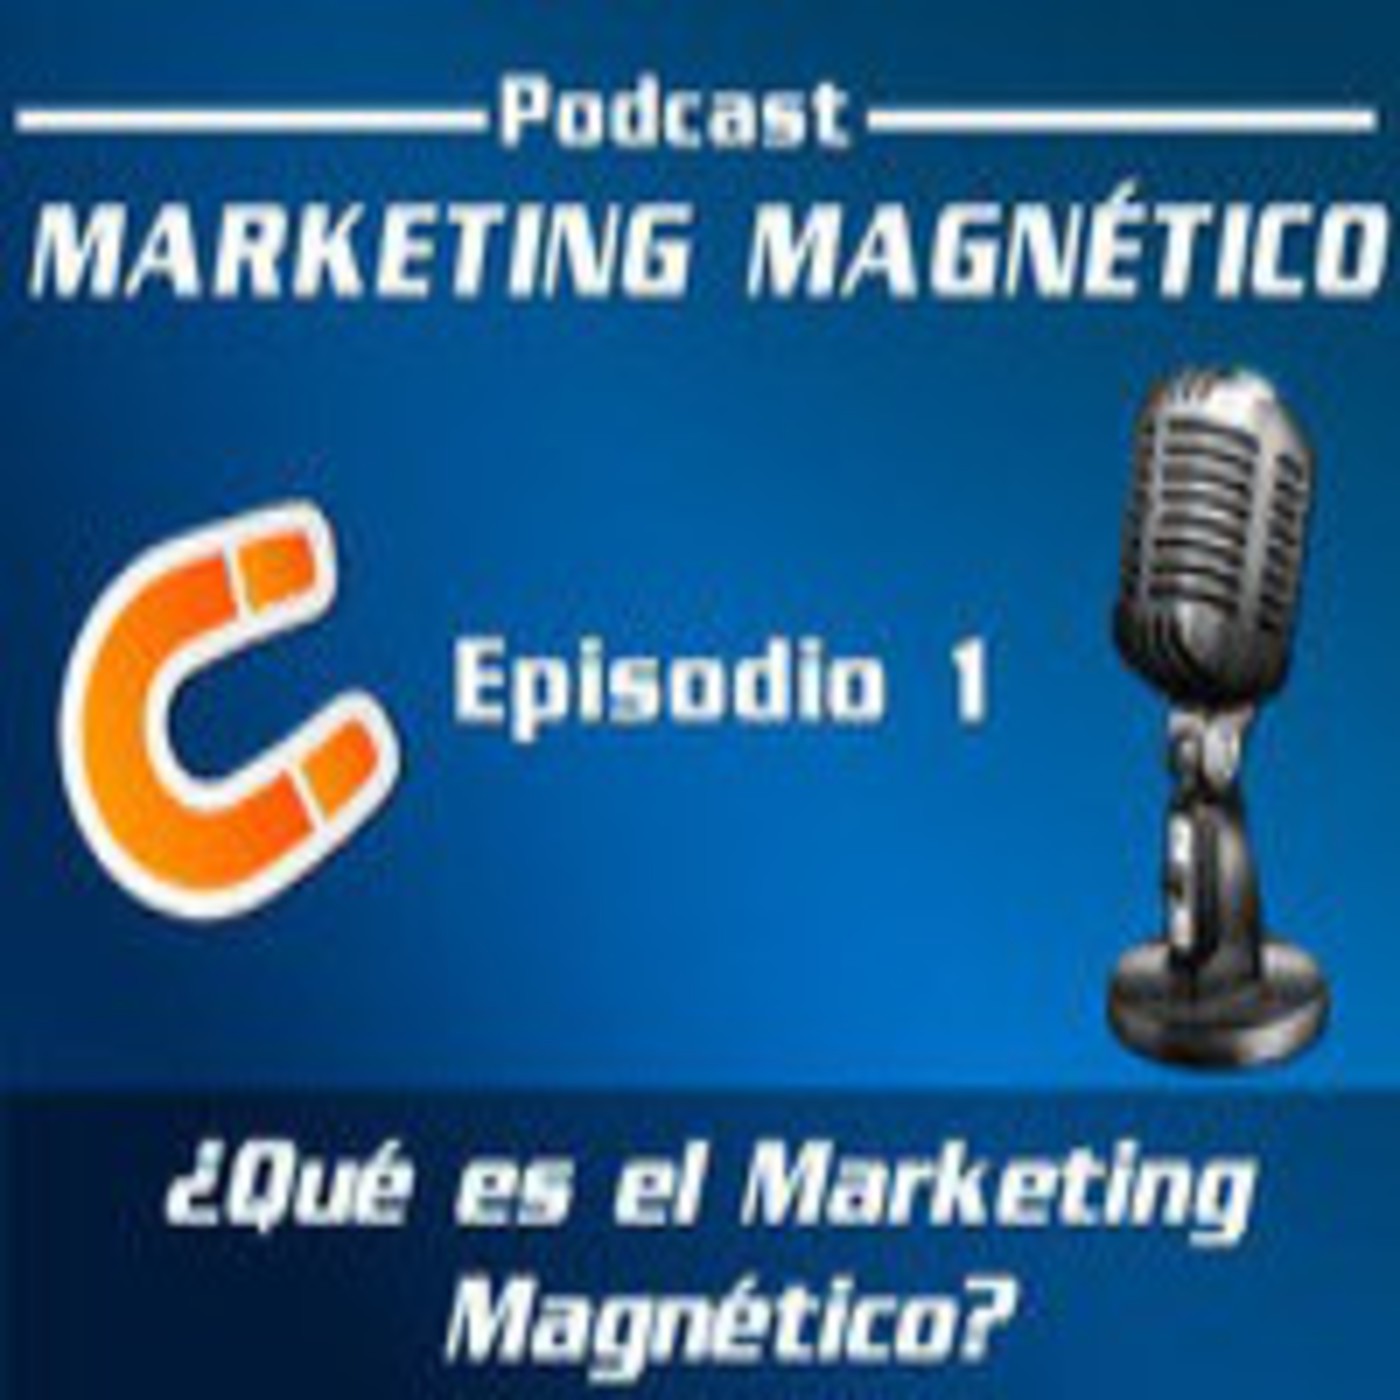 Marketing Magnético - Episodio 1 - ¿Qué es el Marketing Magnético?